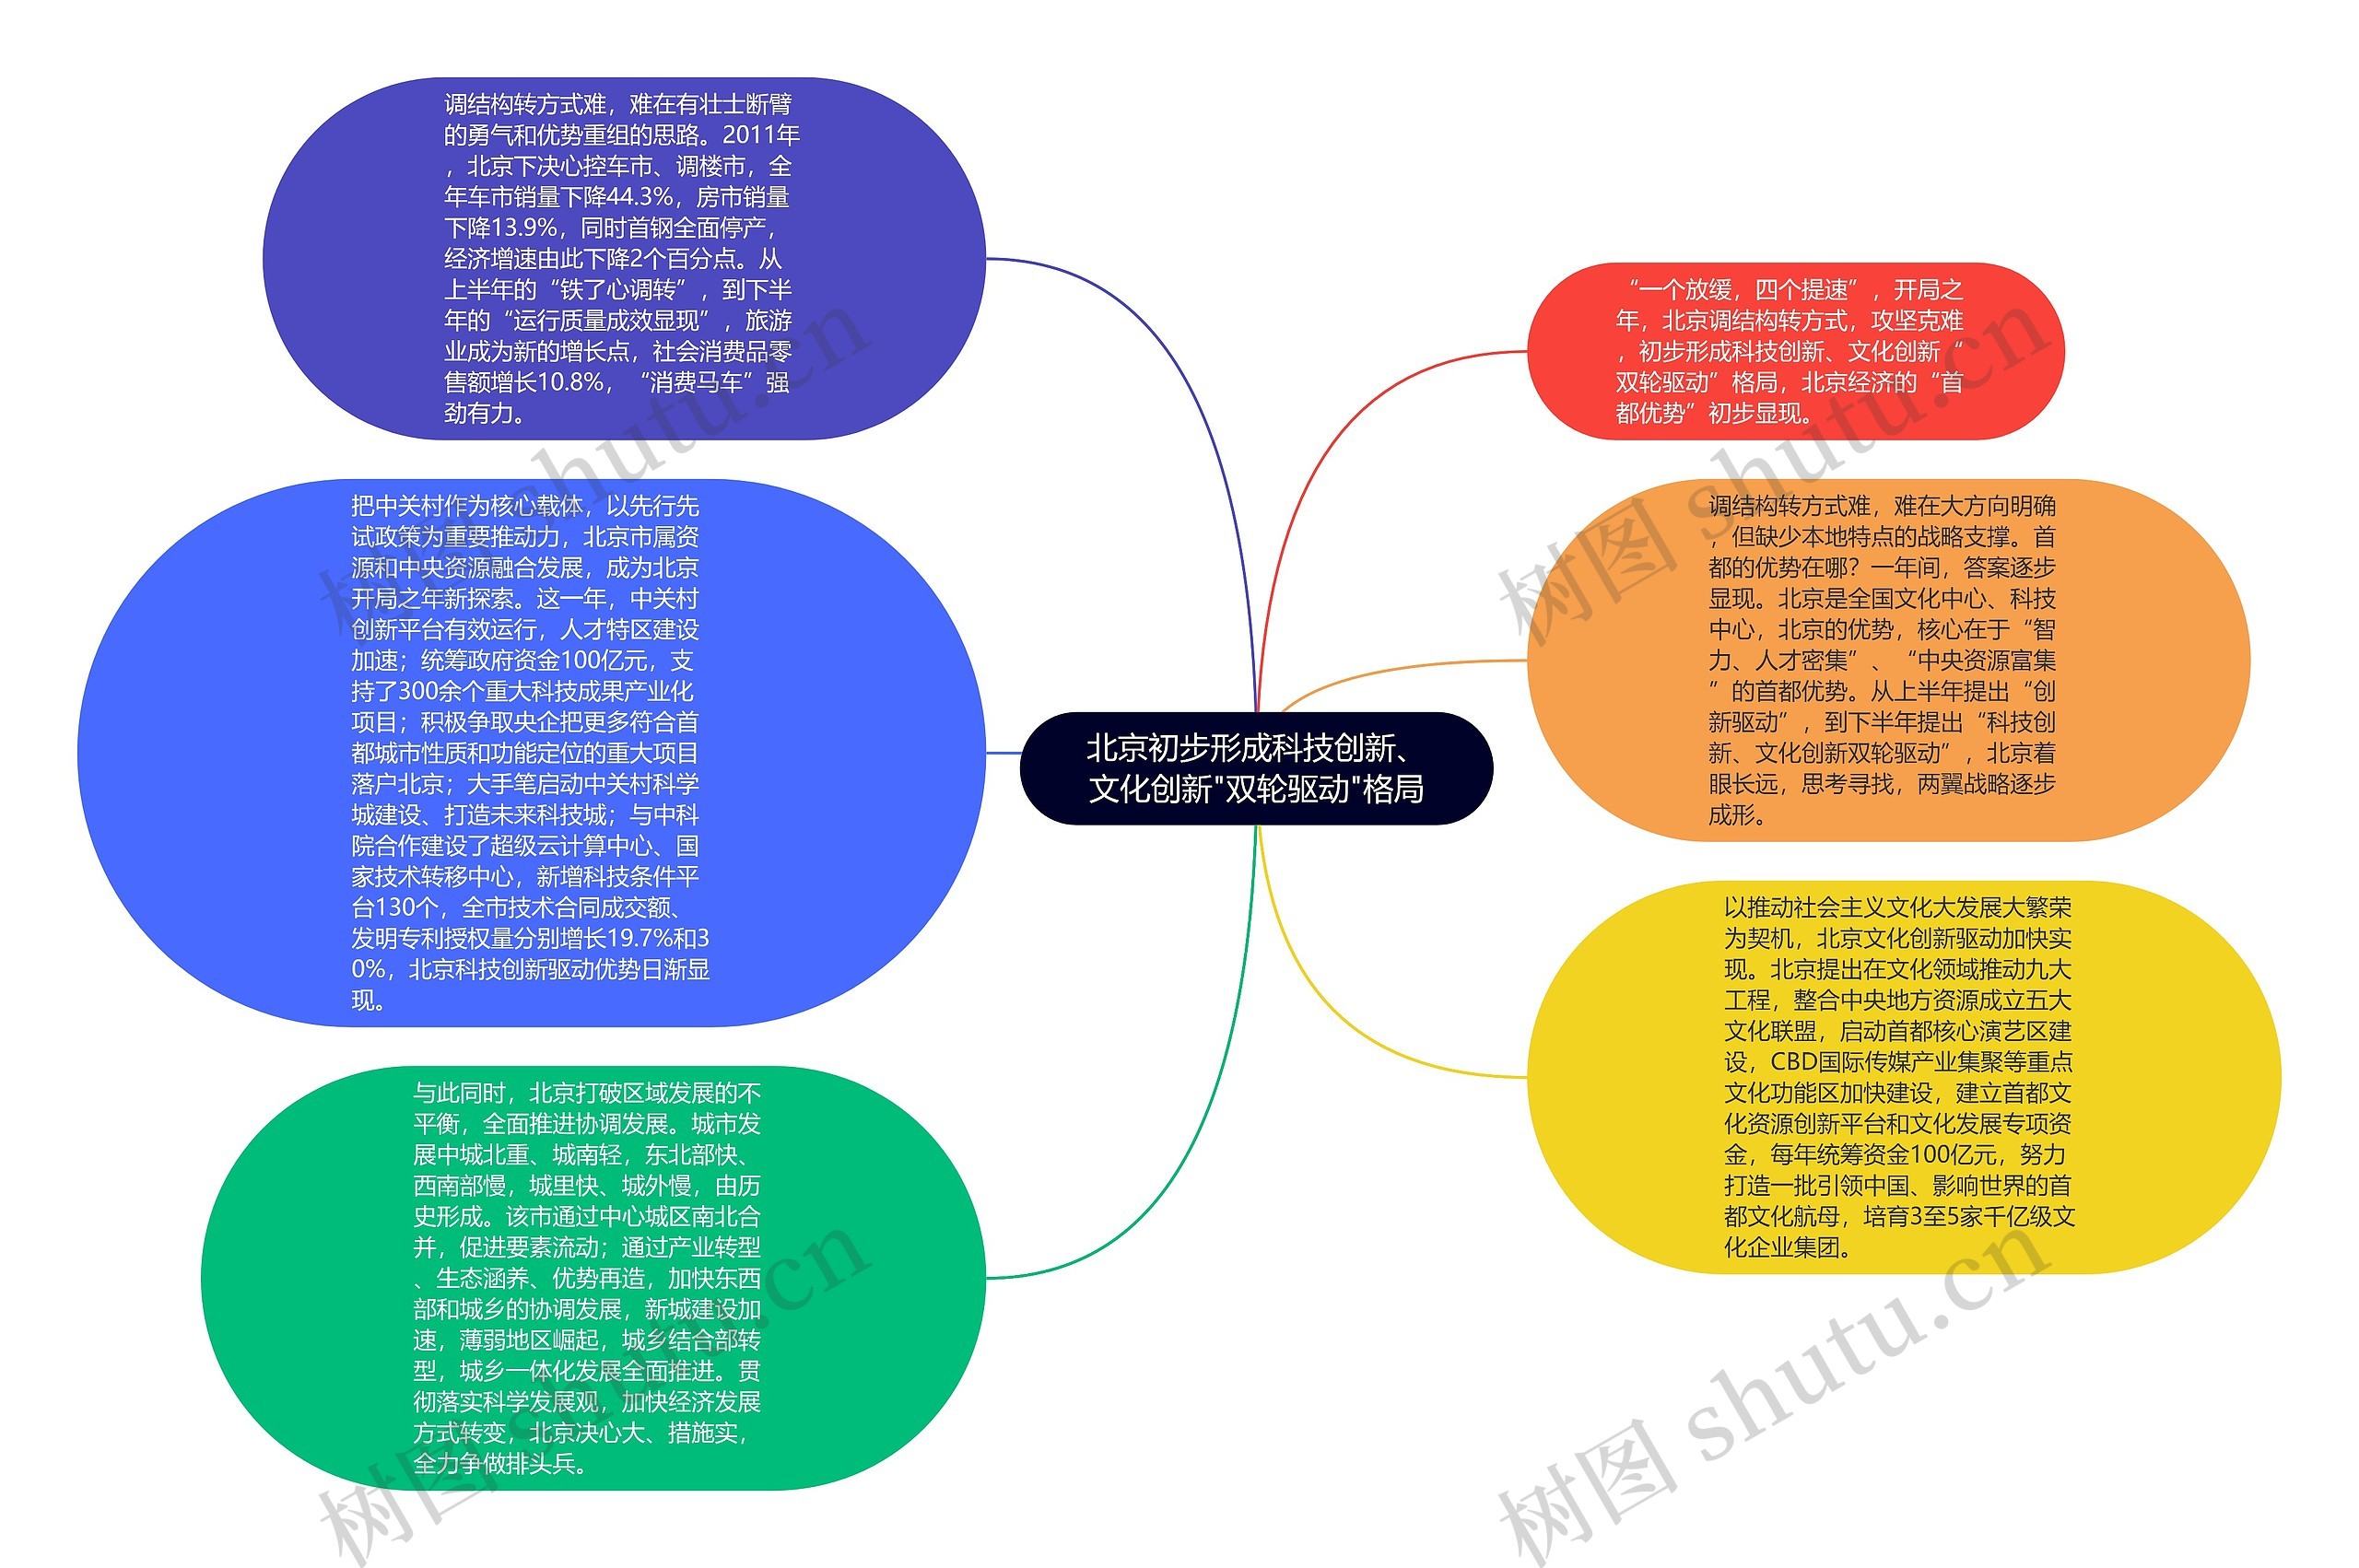 北京初步形成科技创新、文化创新"双轮驱动"格局